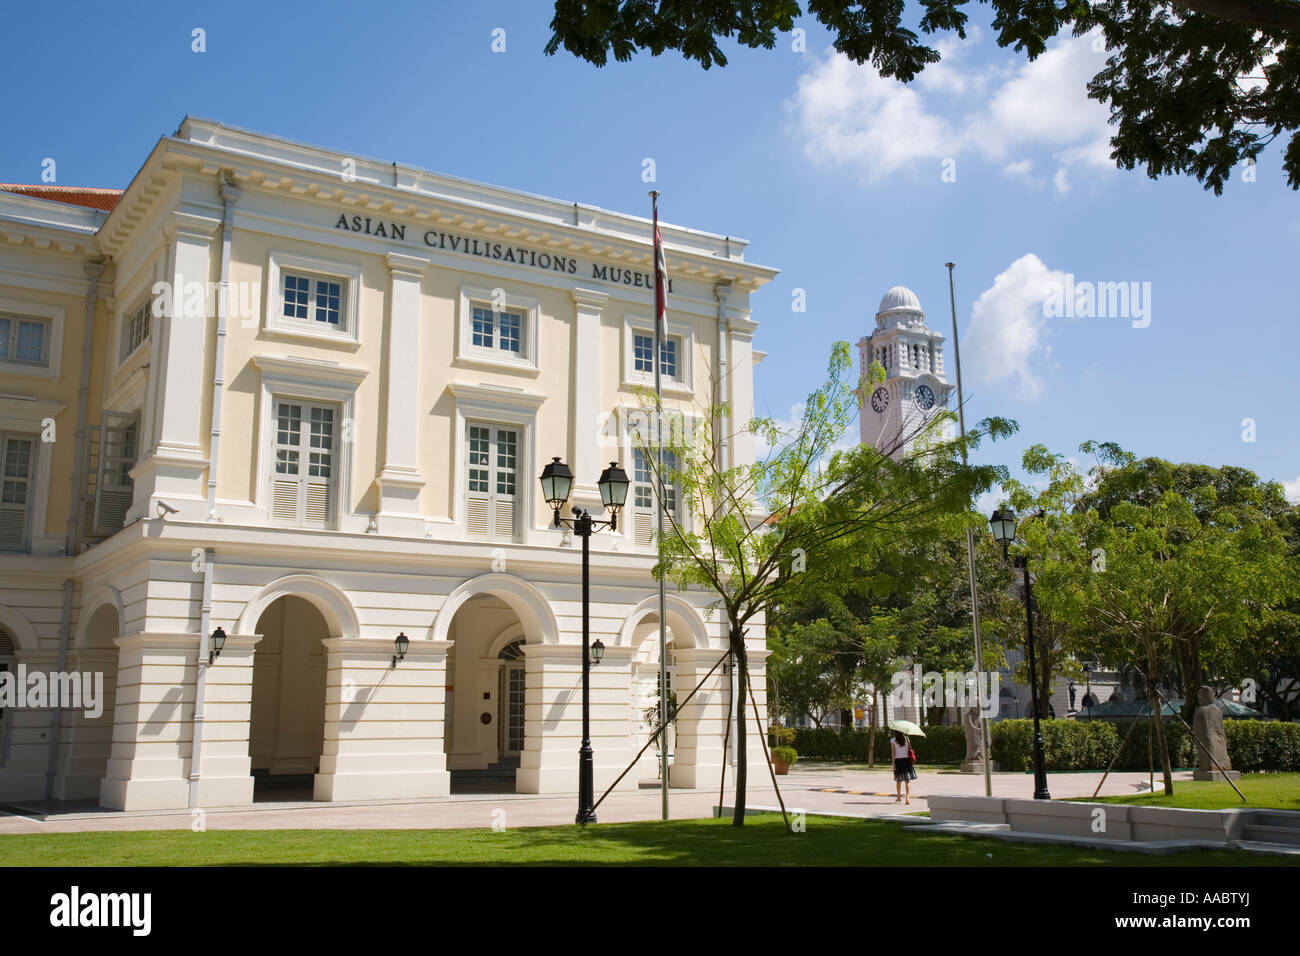 Bezirk Singapur asiatischen Zivilisationen Stadtmuseum im Kaiserin Gebäude 1865 am Empress Place ursprünglich Court House. Singapur Stockfoto